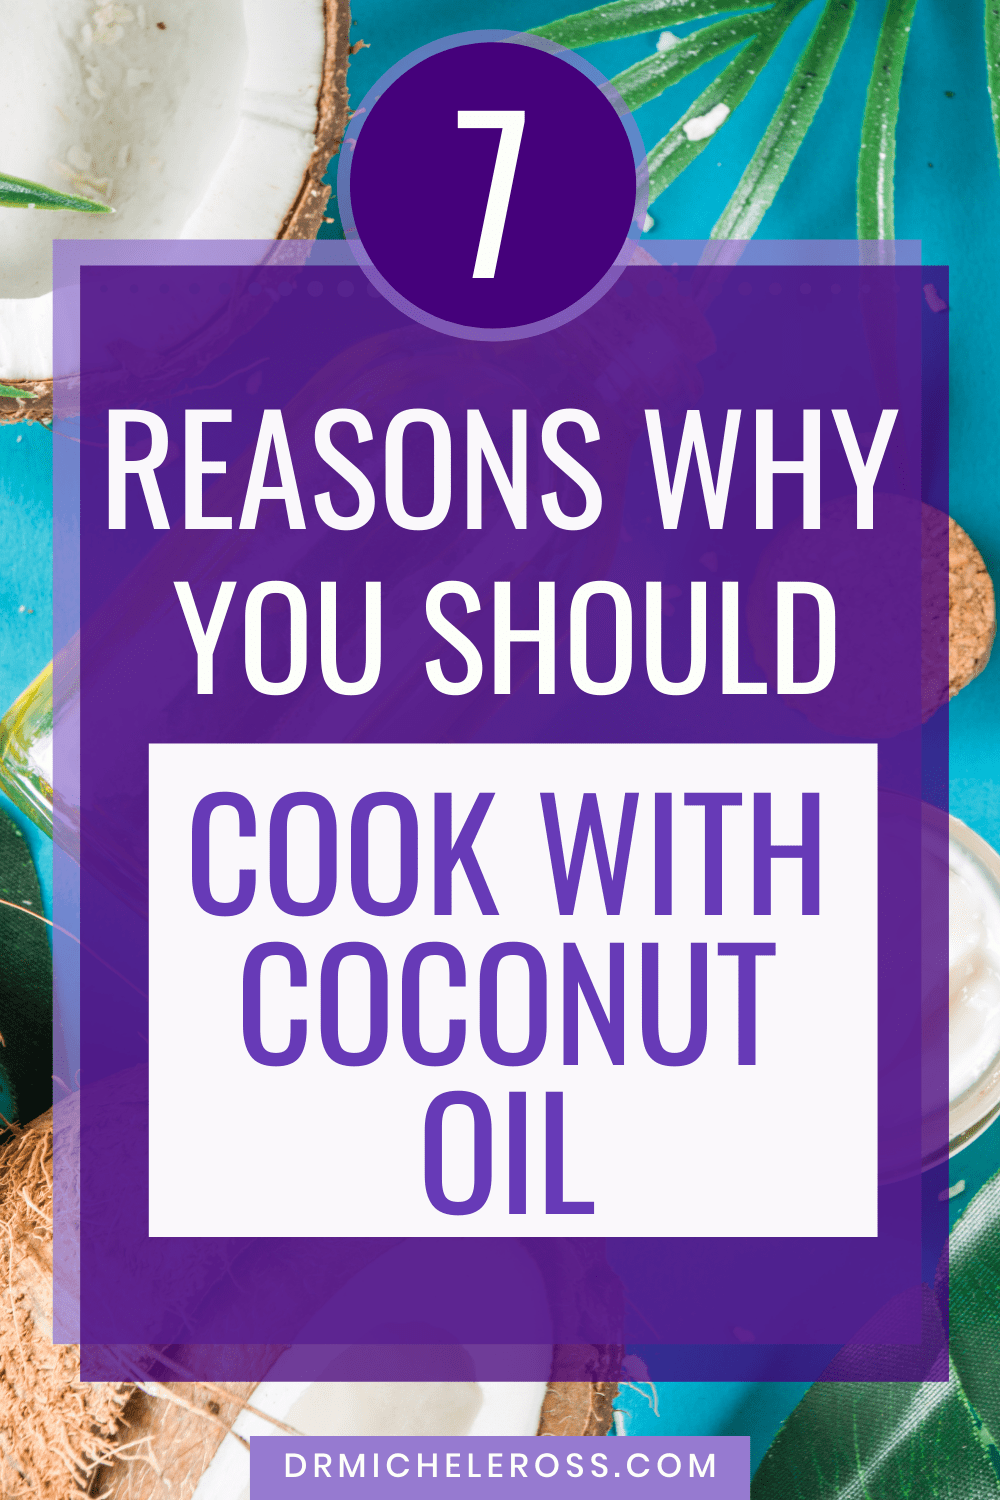 coconut oil has many health benefits